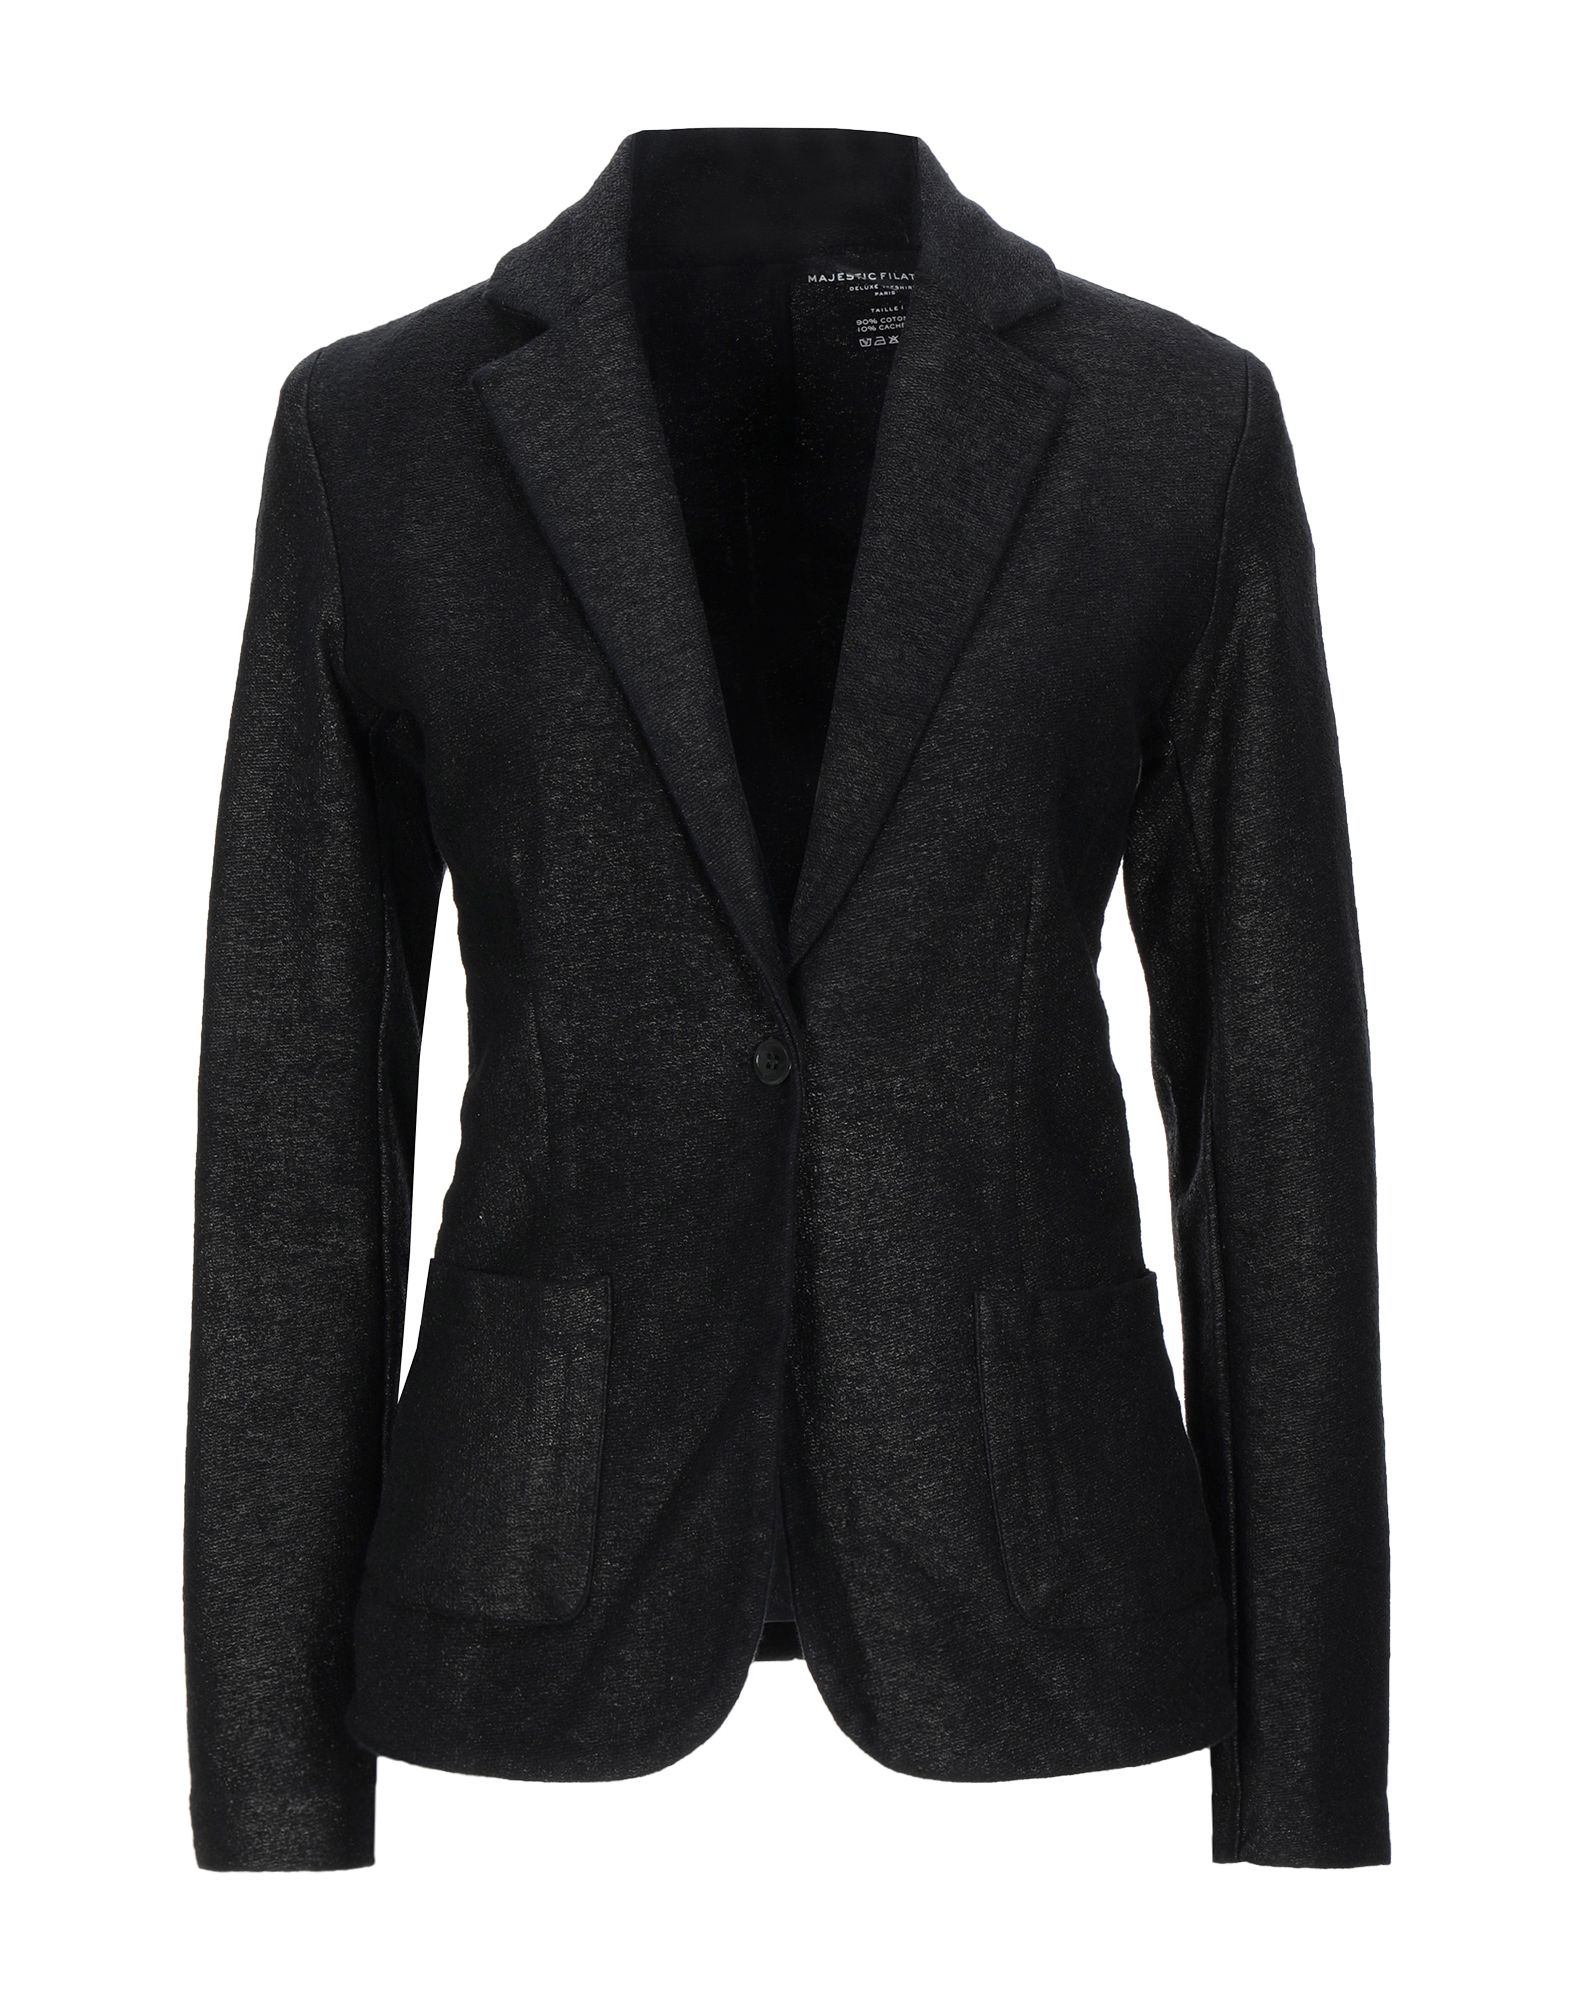 MAJESTIC FILATURES Suit jackets - Item 49551128